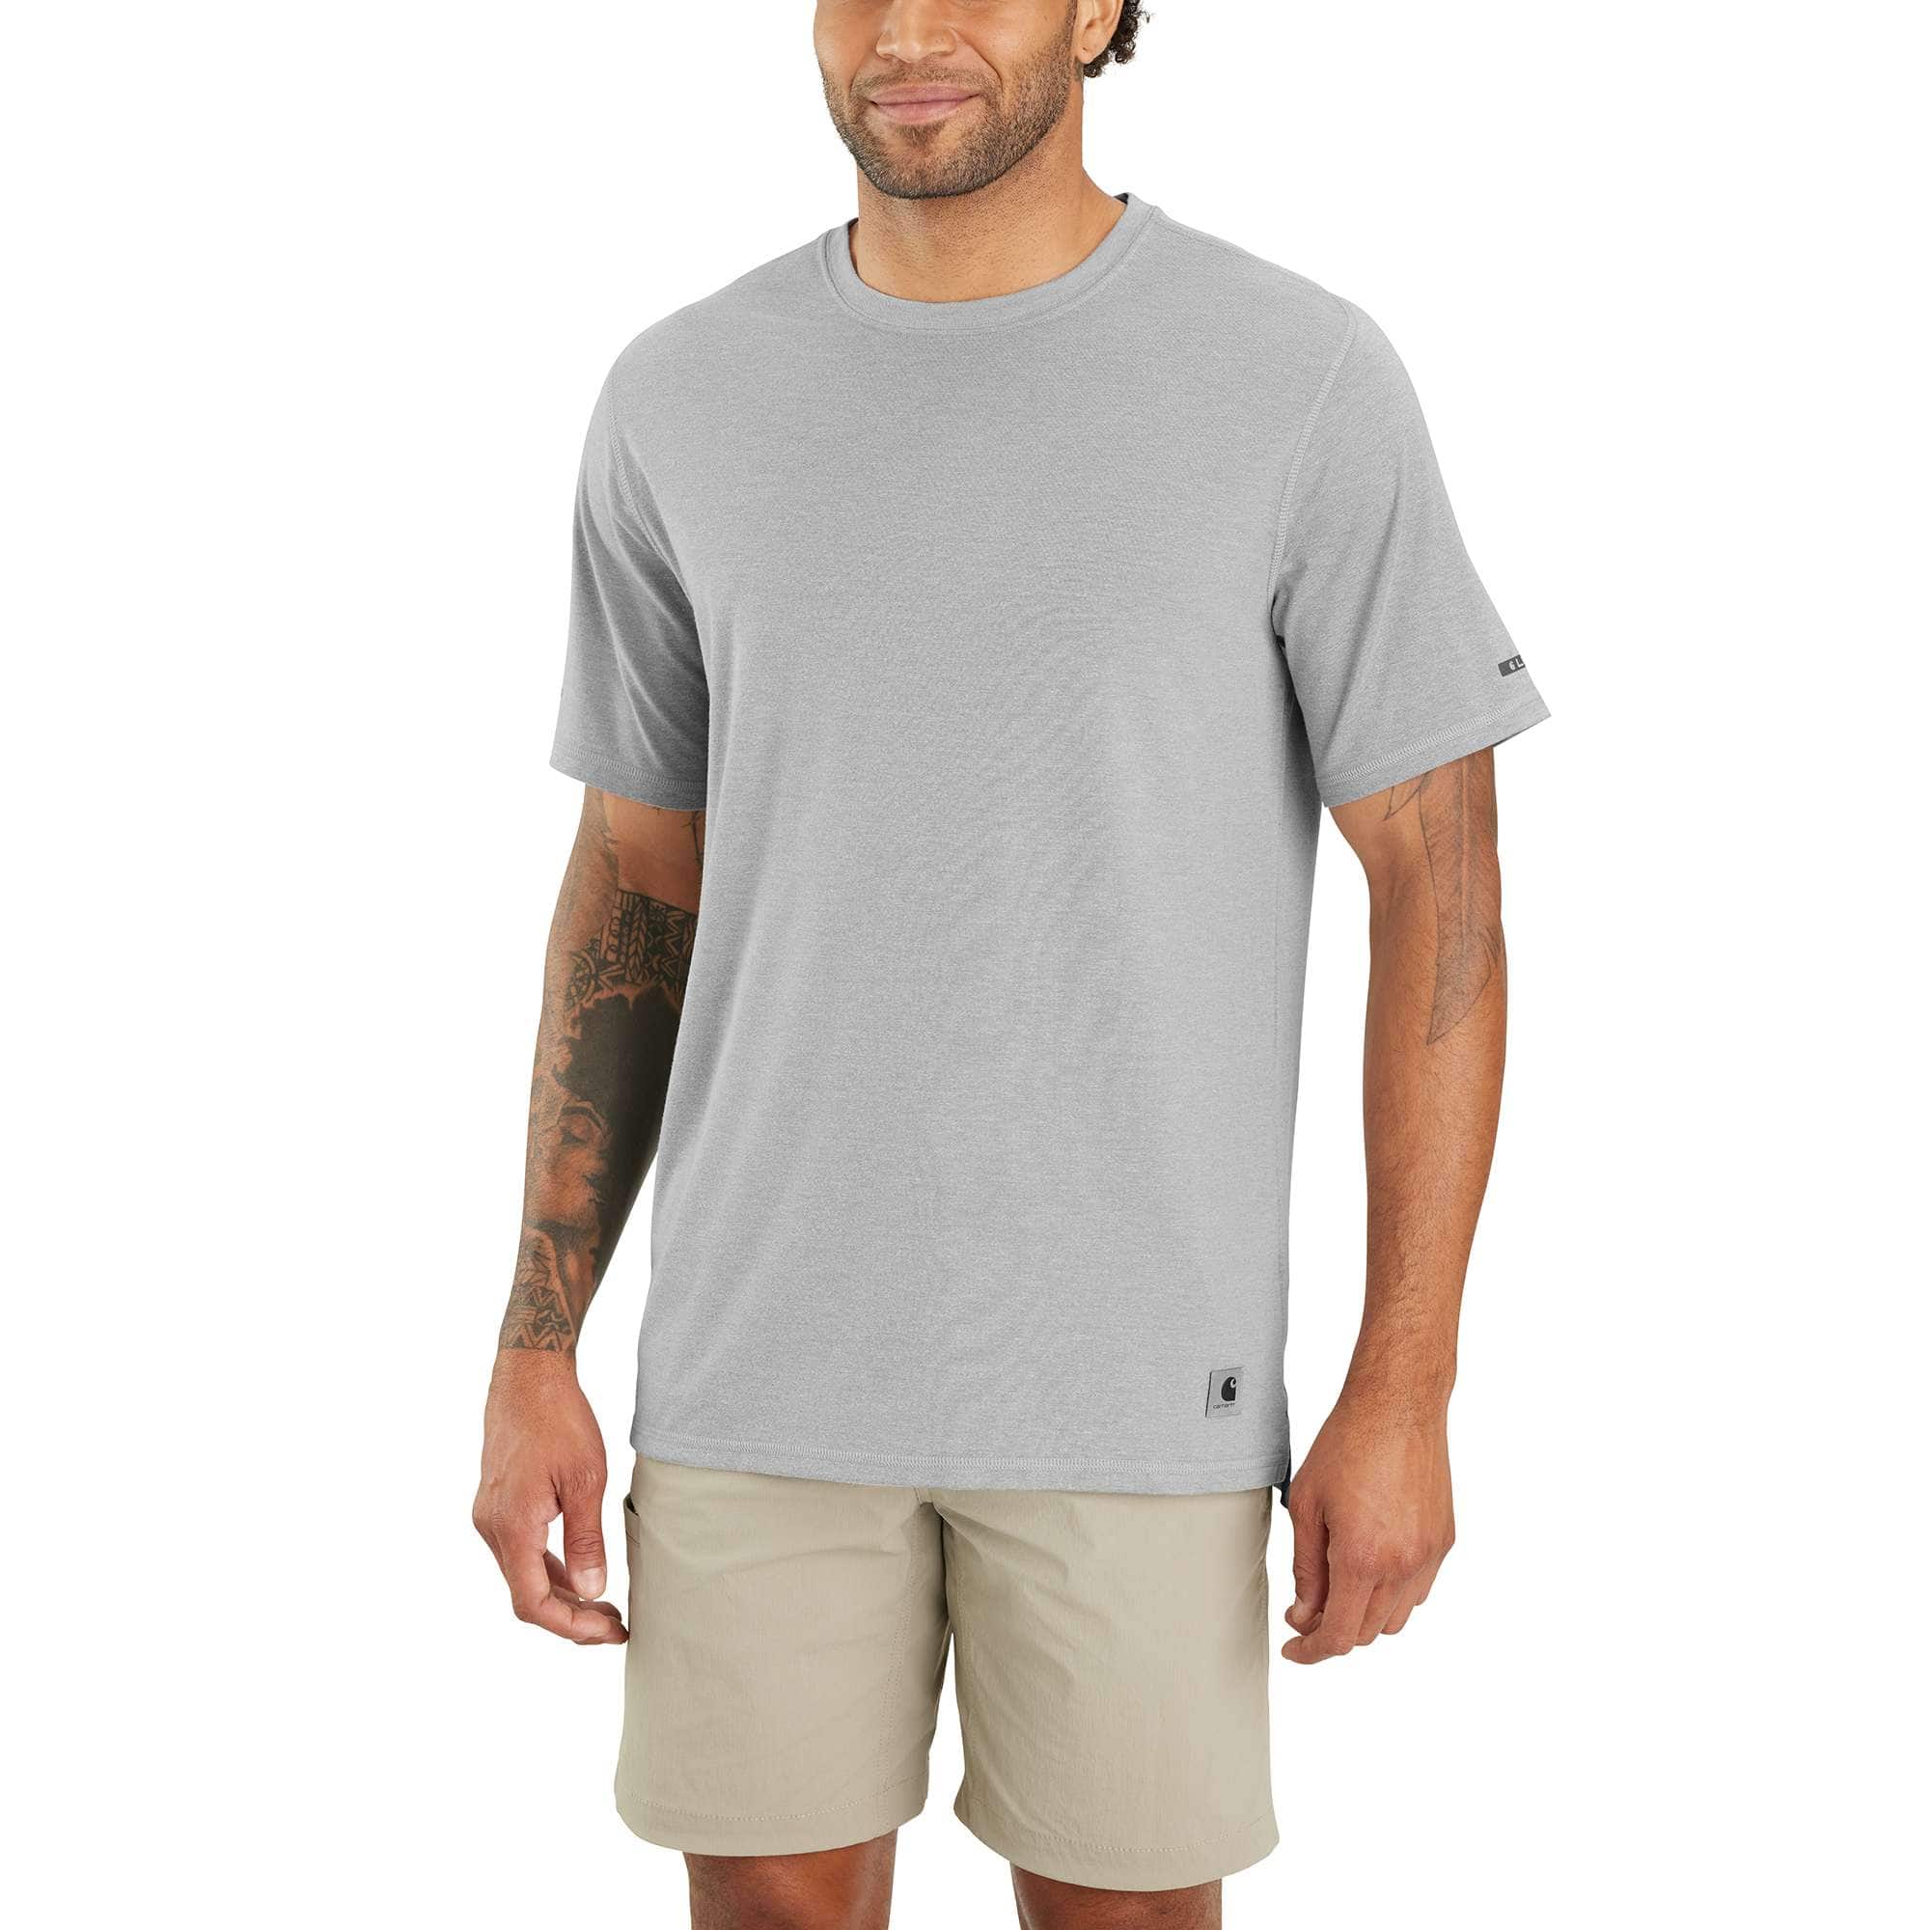 Carhartt Men's Asphalt Heather Carhartt Force® Relaxed Fit Short-Sleeve Lightweight T-Shirt